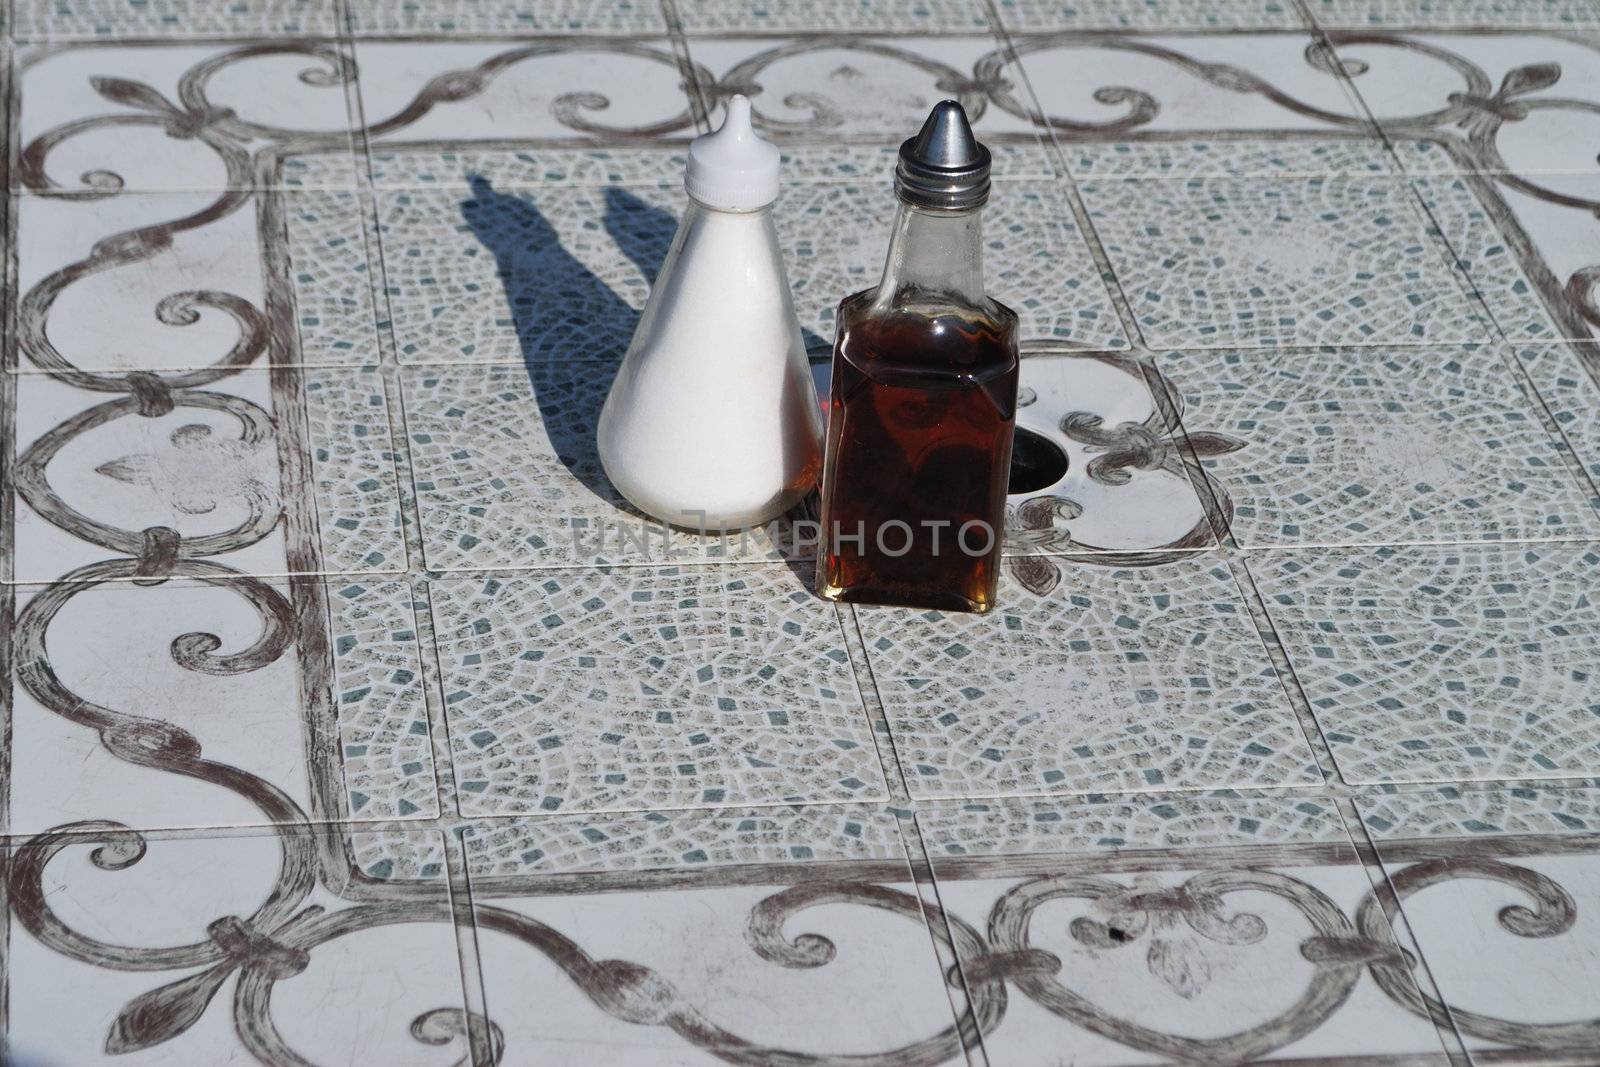 Salt and vinegar jars on tile table